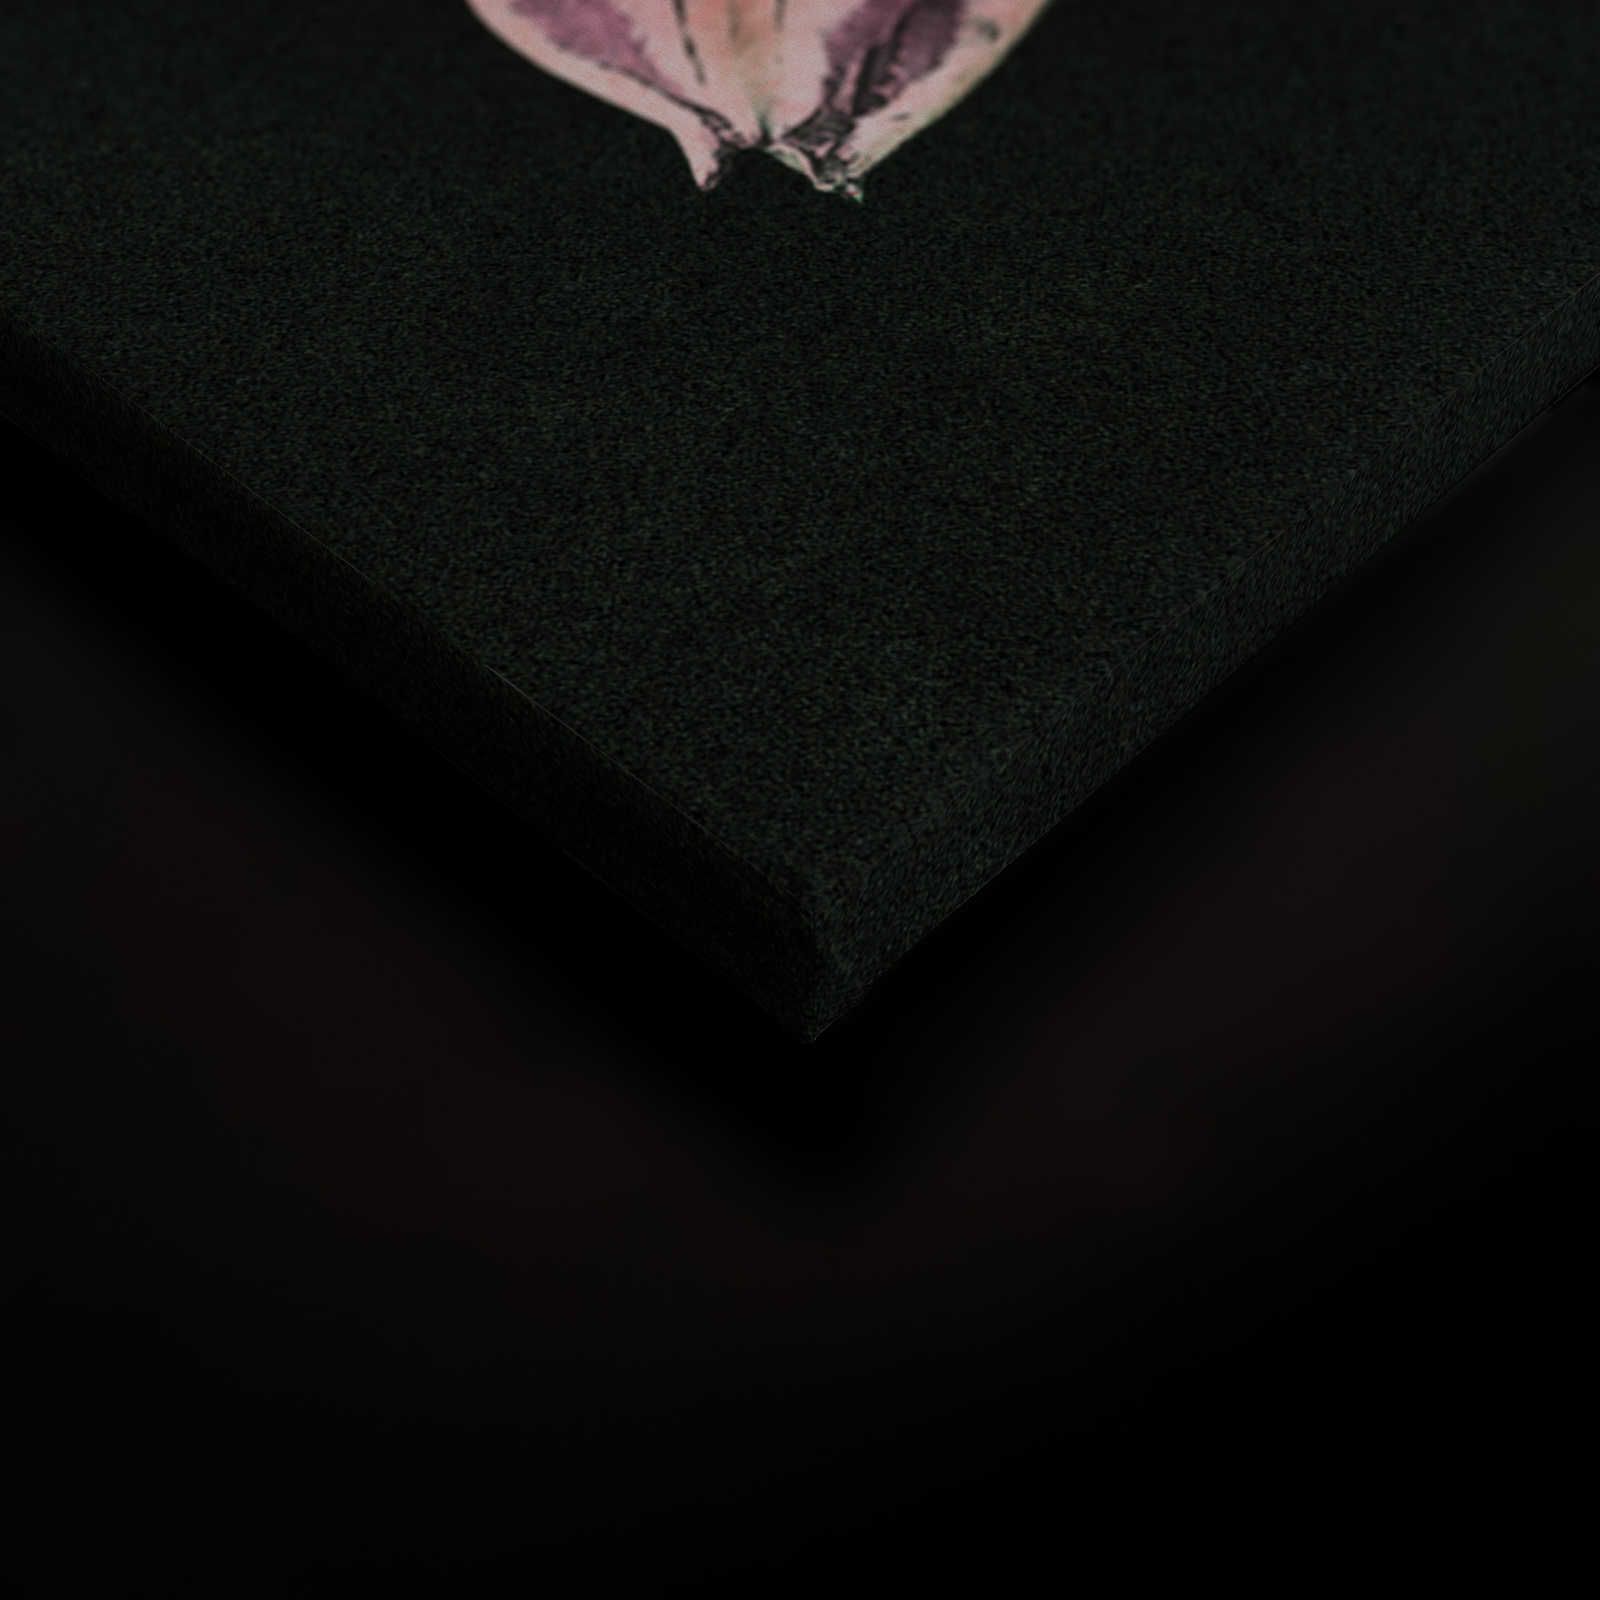             Drama queen 3 - Toile bouquet de fleurs romantique - 1,20 m x 0,80 m
        